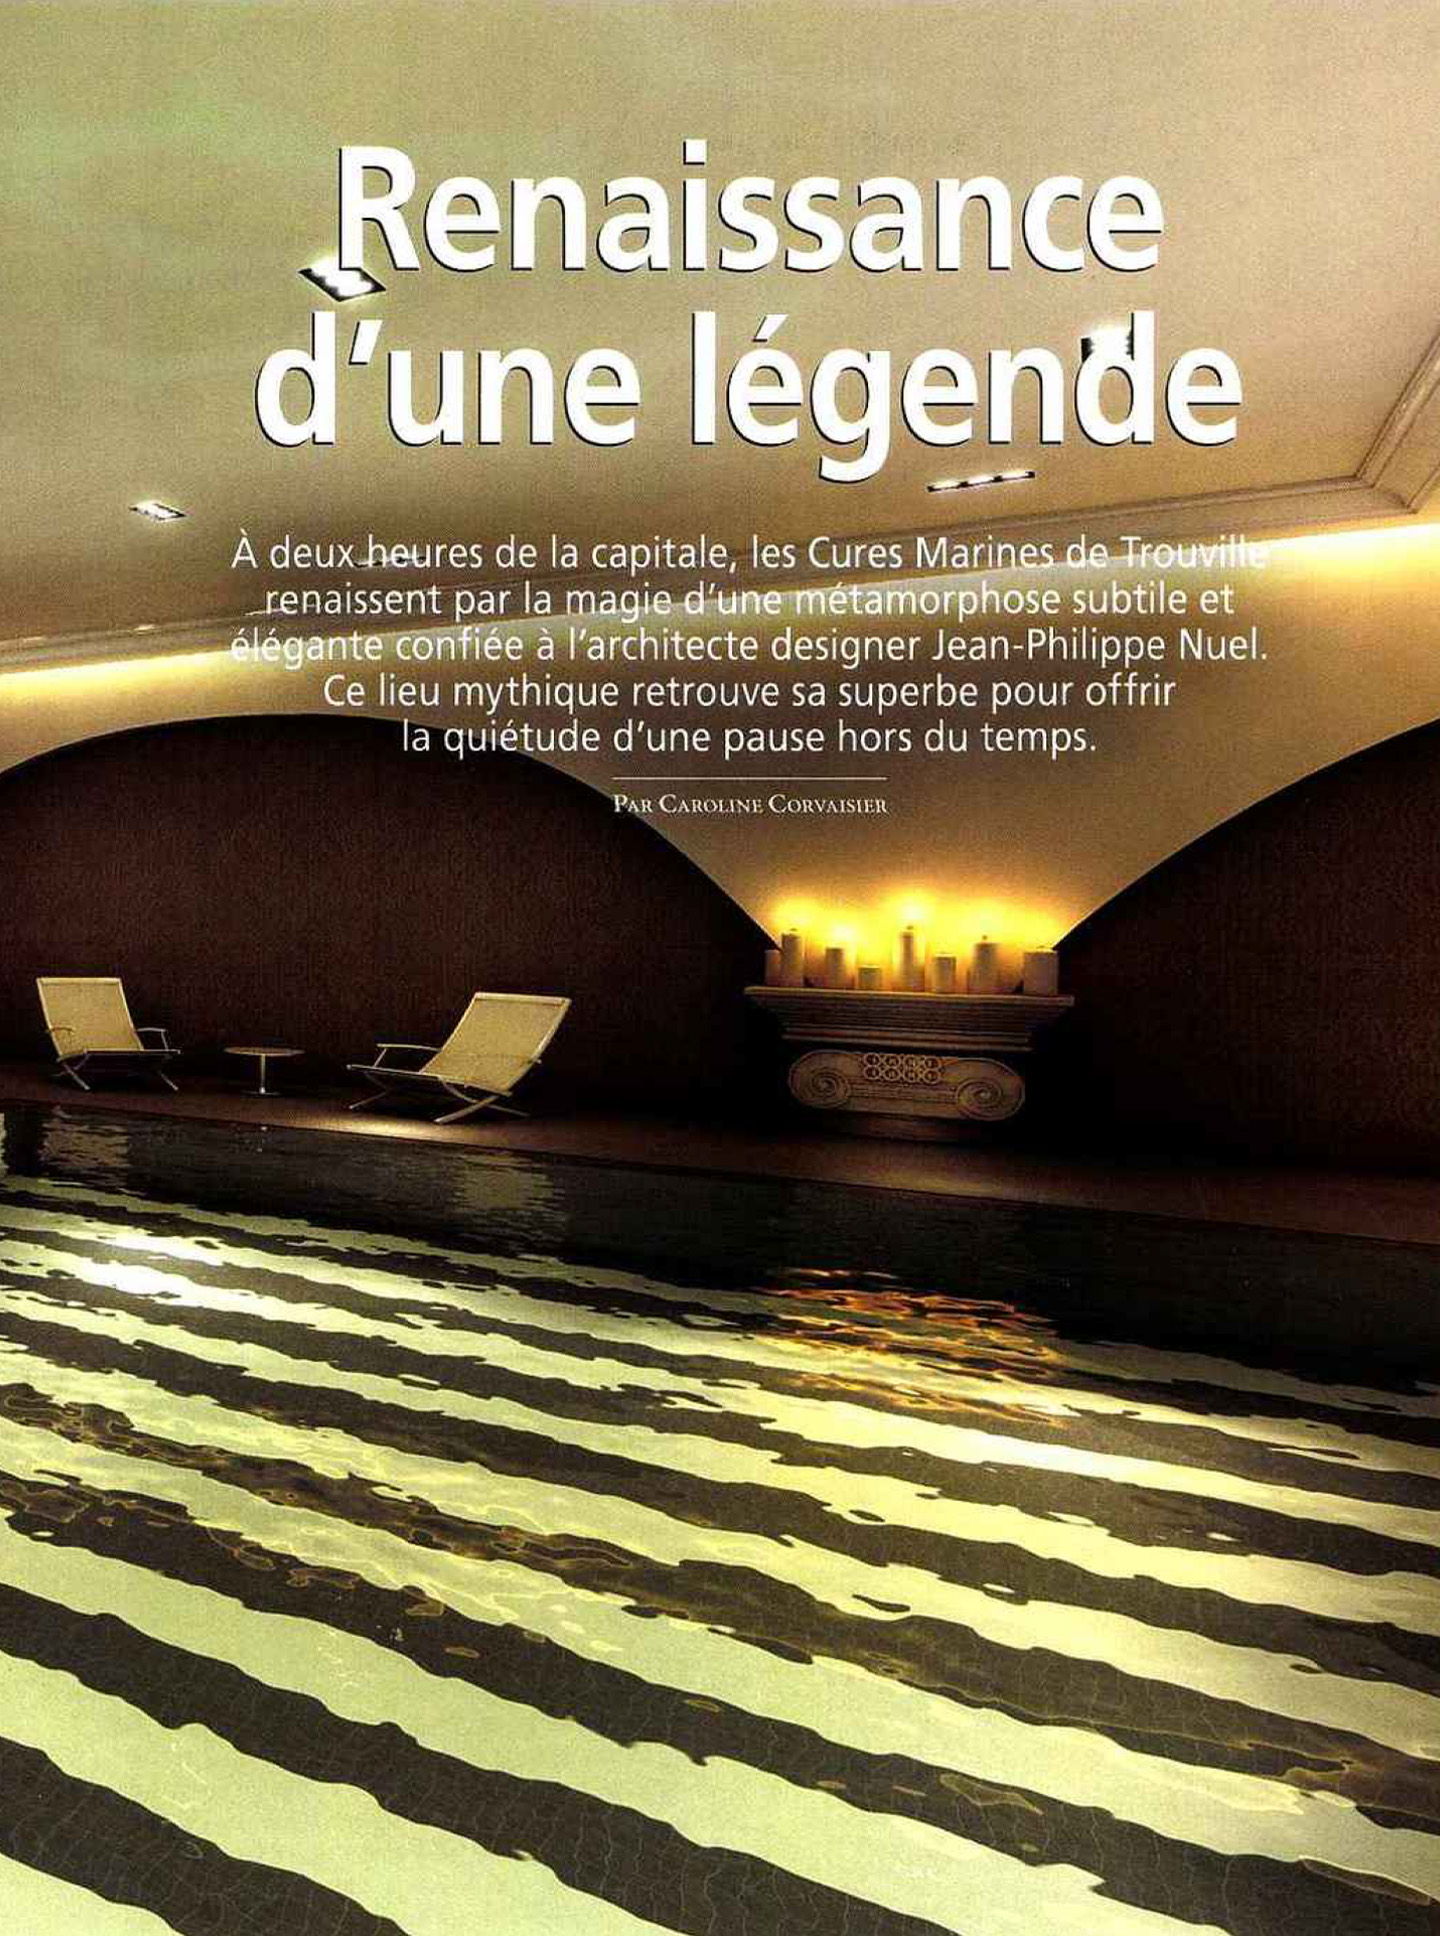 article sur les cures marines de trouville dans le magazine hotel & lodge, hotel et spa de luxe réalisé par le studio d'architecture jean-philippe nuel